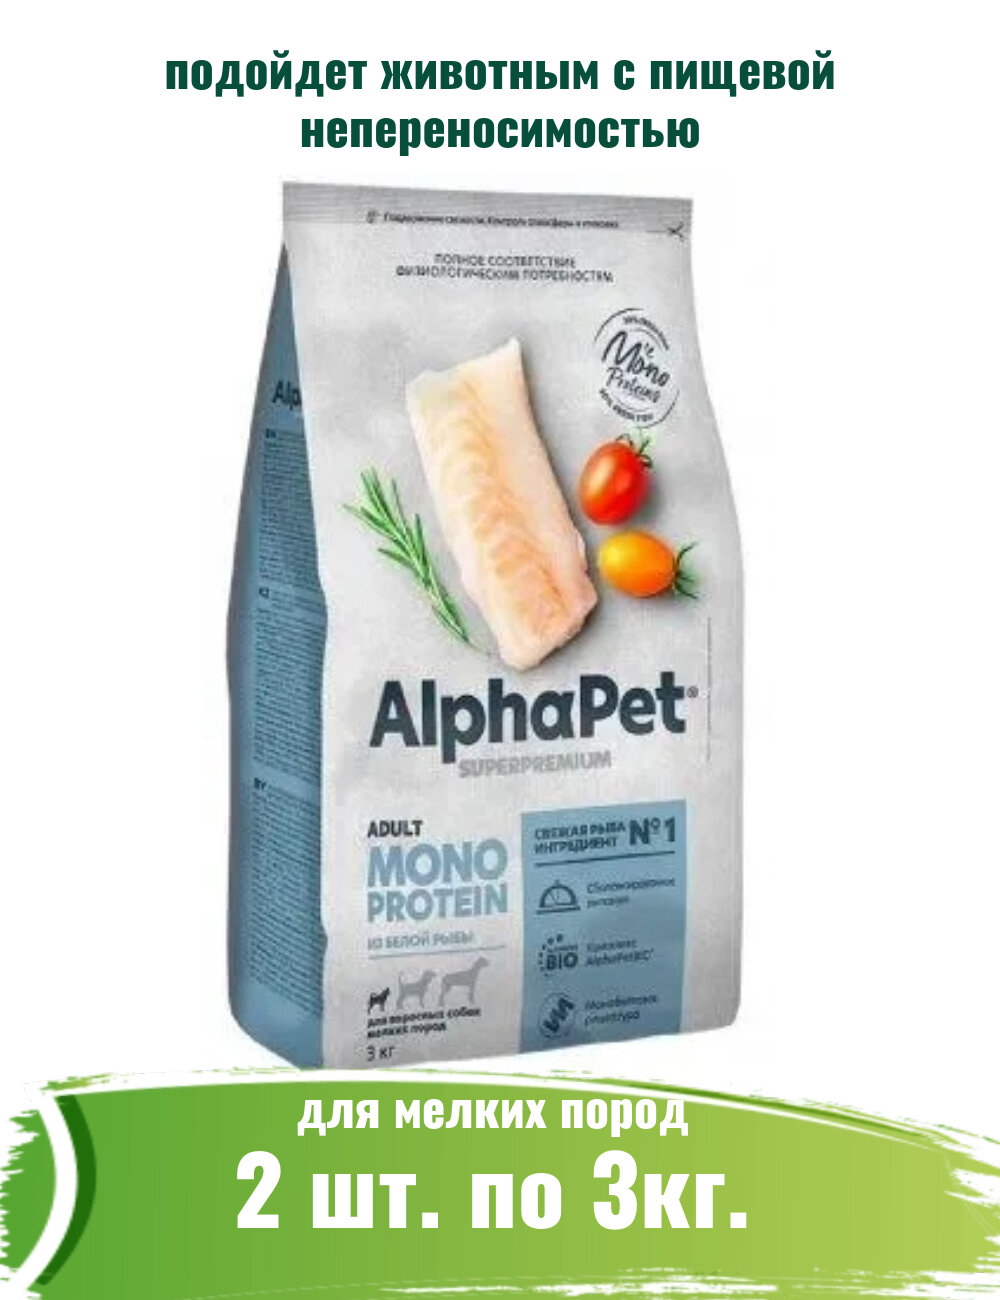 AlphaPet Superpremium Monoprotein (АльфаПет) 2шт по 3кг из белой рыбы сухой для взрослых собак мелких пород